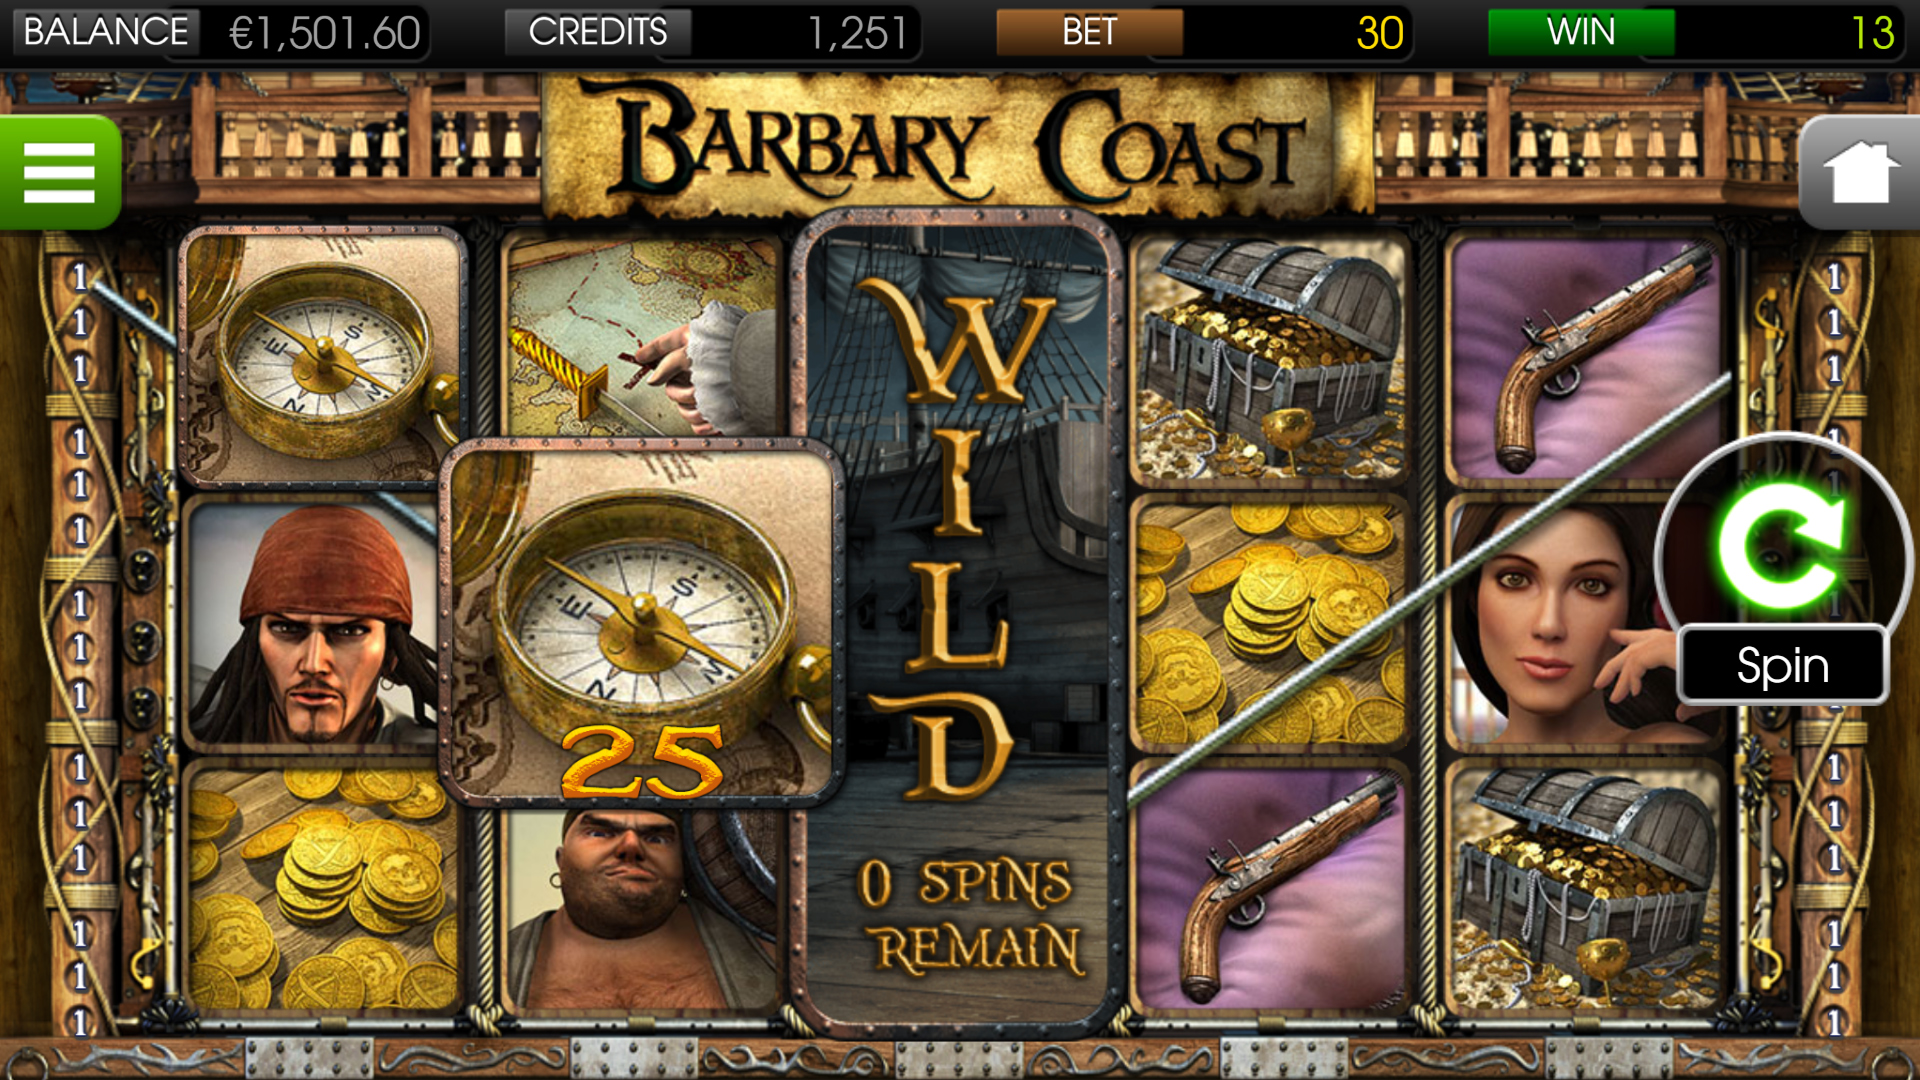 Barbary Coast - Wild